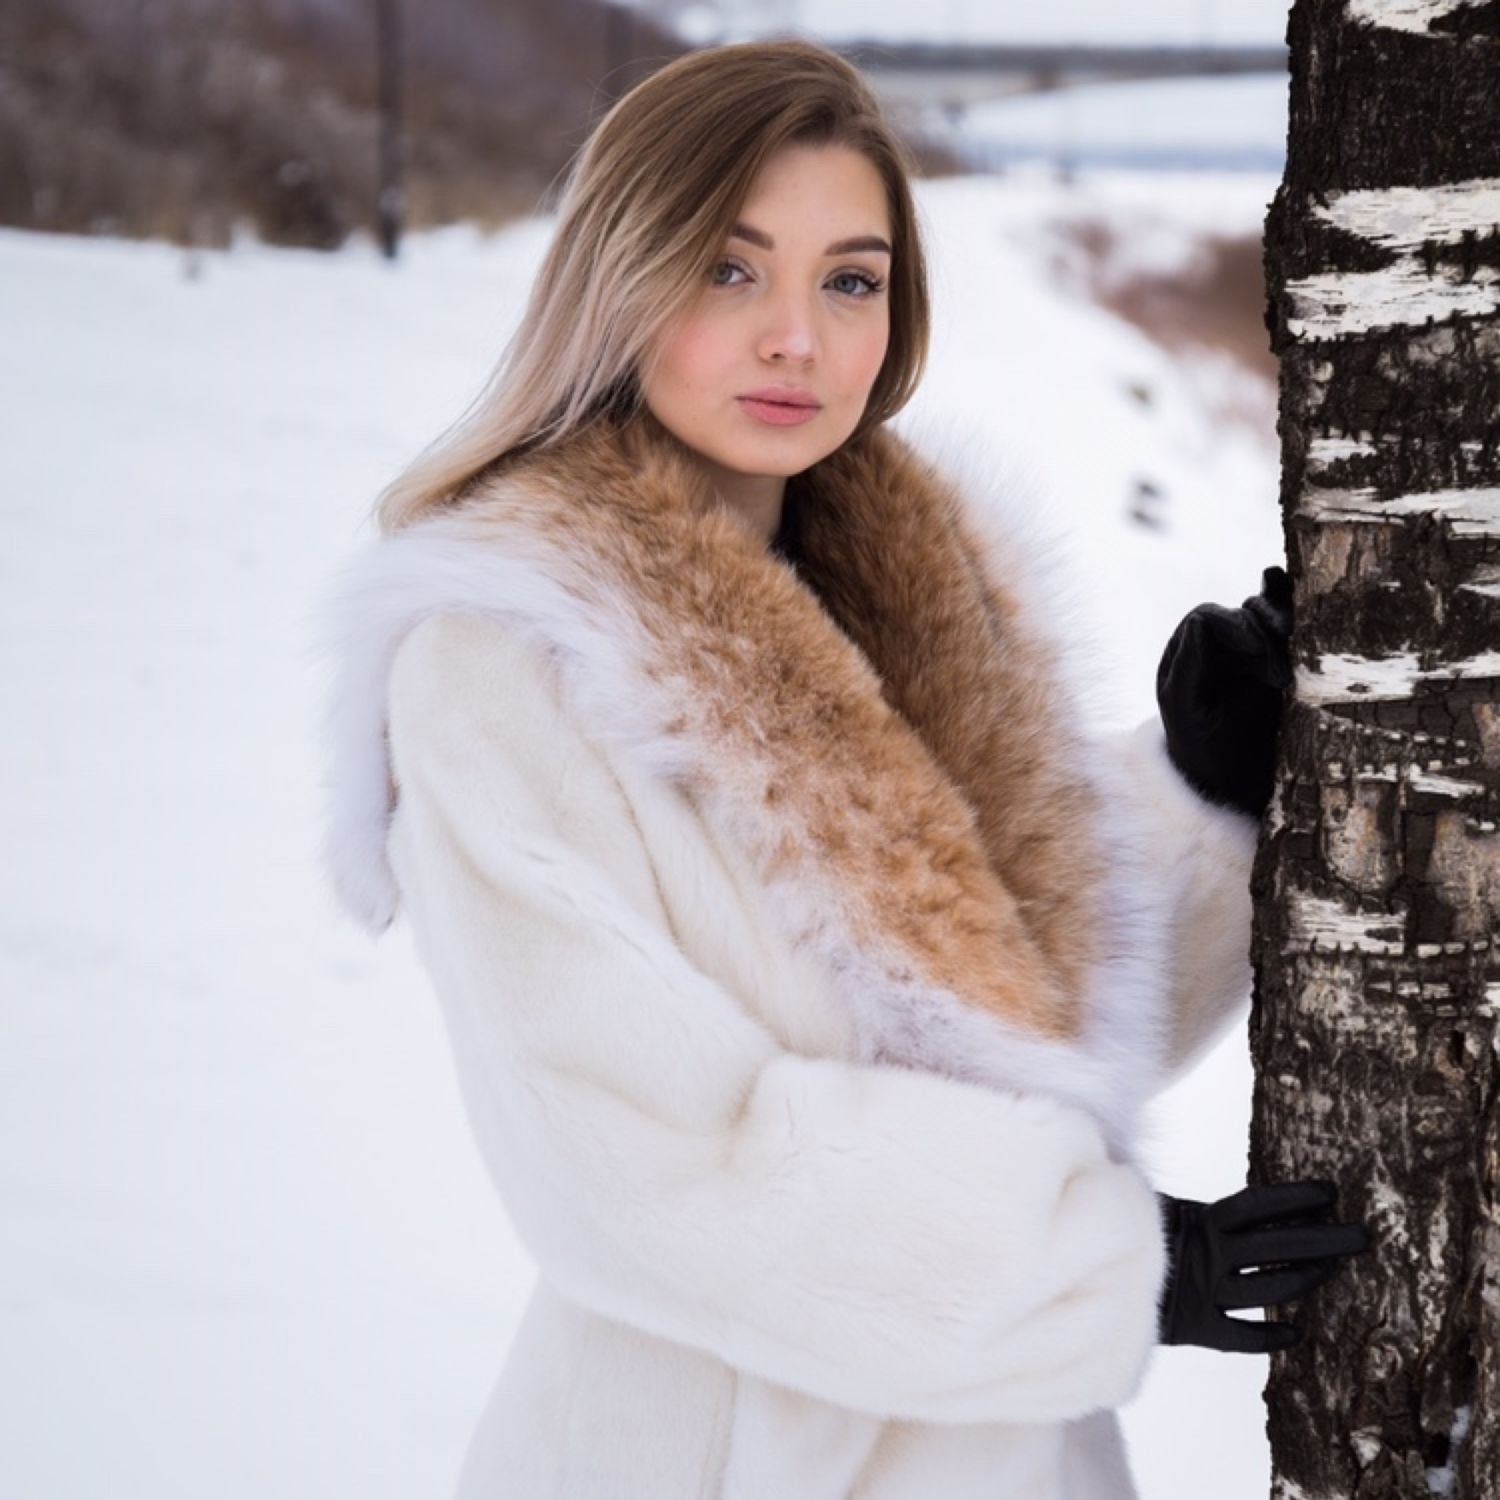 Maria Koshkina fur coats » Wallpapers and Images